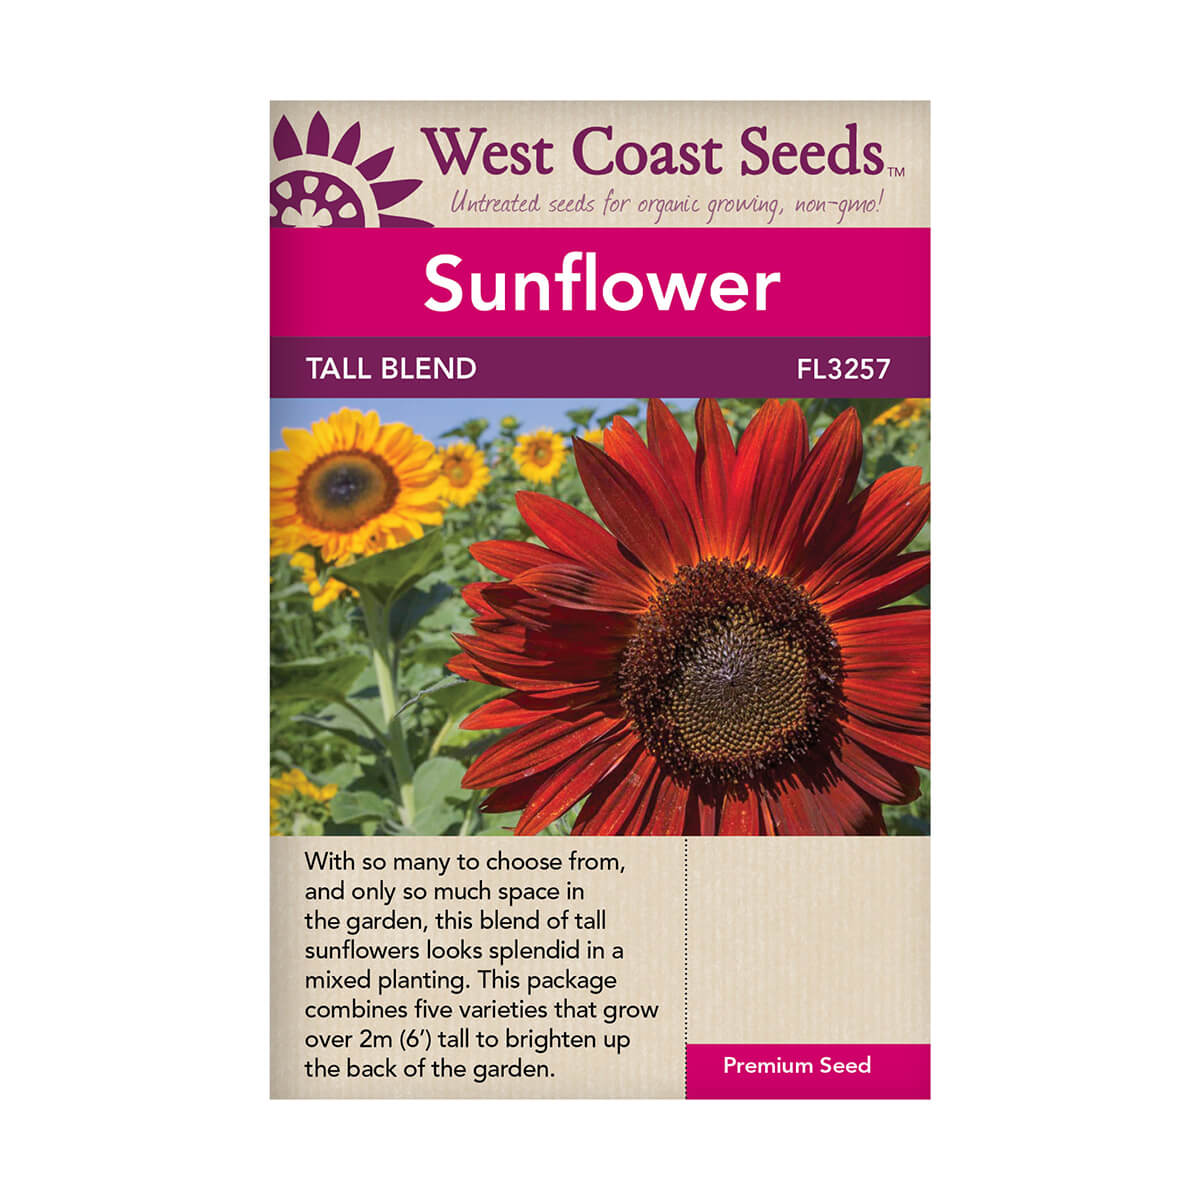 Tall Blend Sunflower seeds - approx. 1.5g